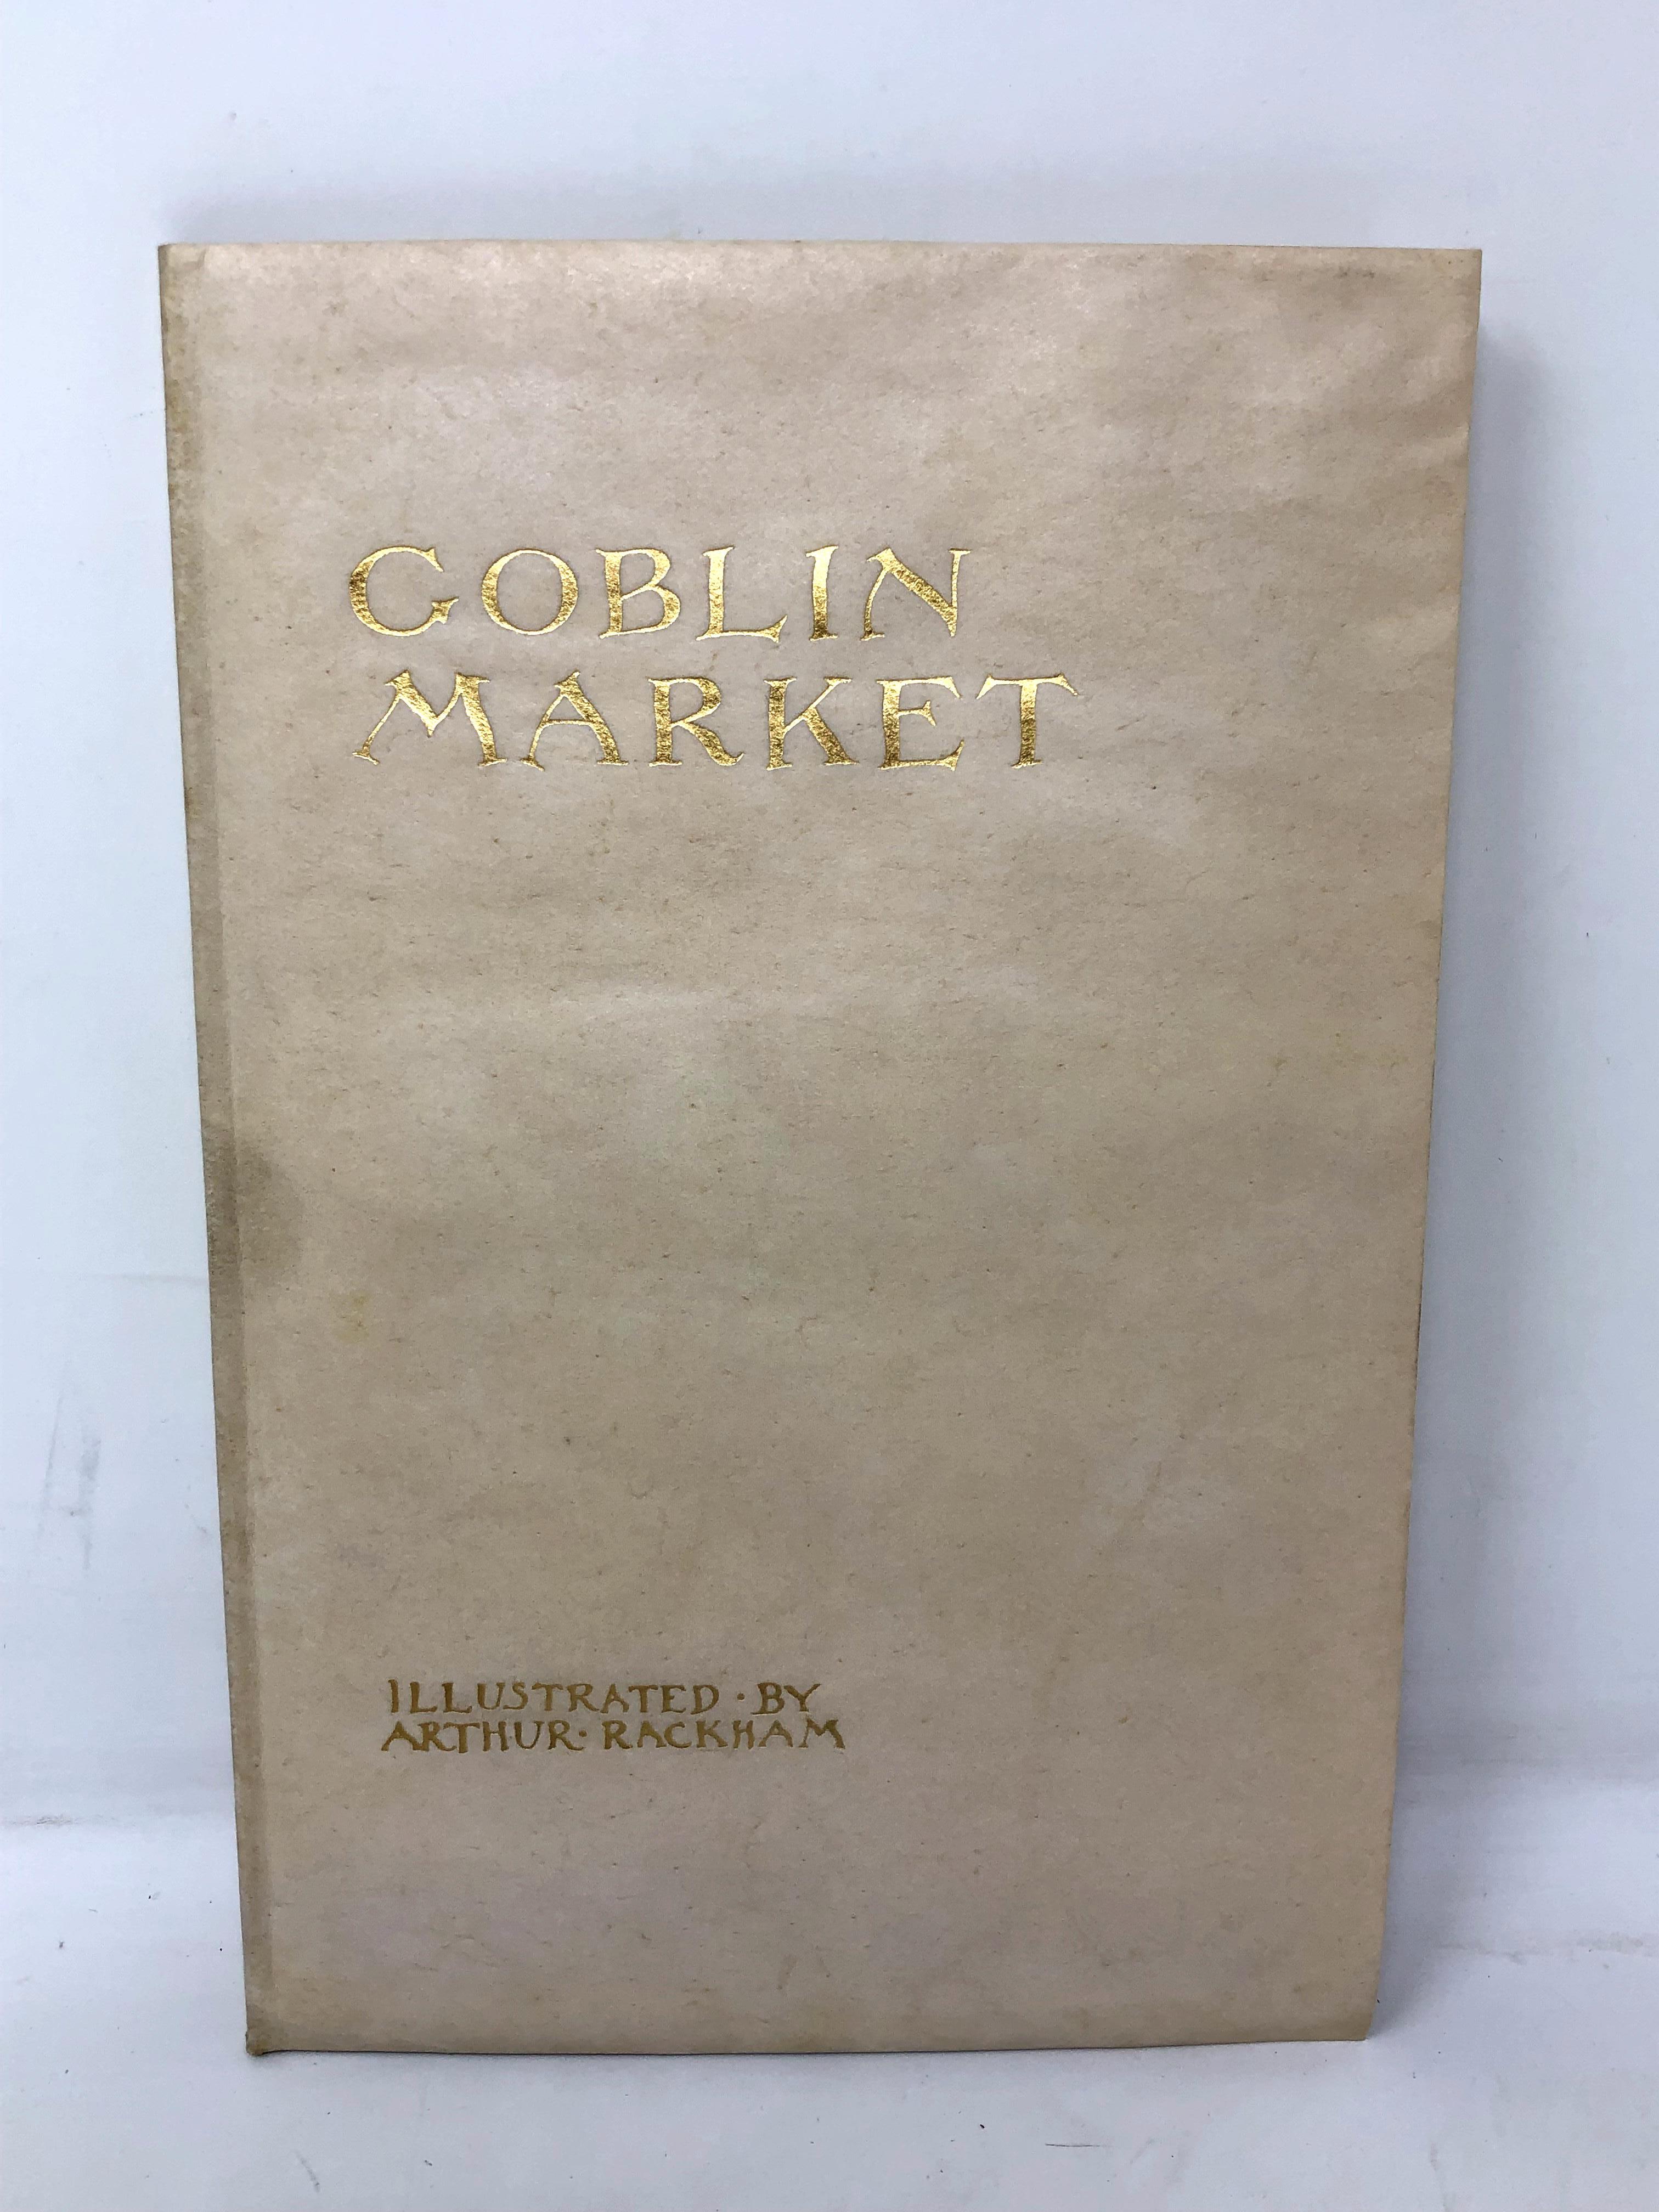 Arthur Rackham, 1867 - 1939 (Illustrator) : Goblin Market by Christina Rossetti, a volume,